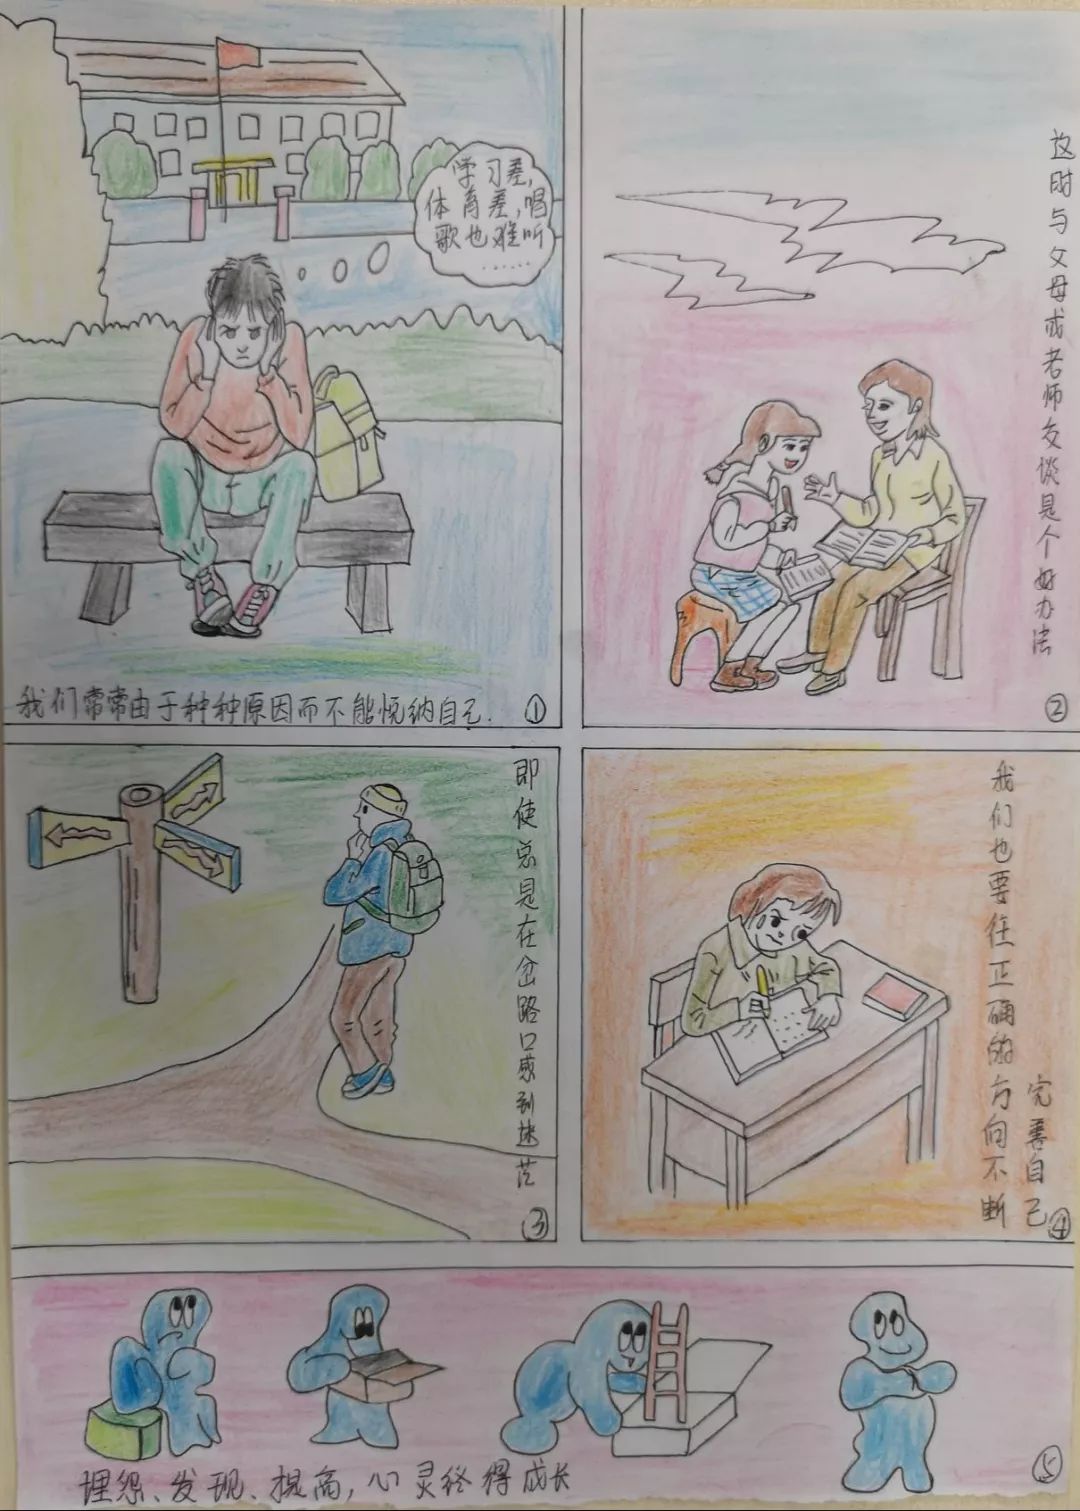 经过精心挑选,报送参与晋江市中小学校园心理漫画评选大赛,初中组的